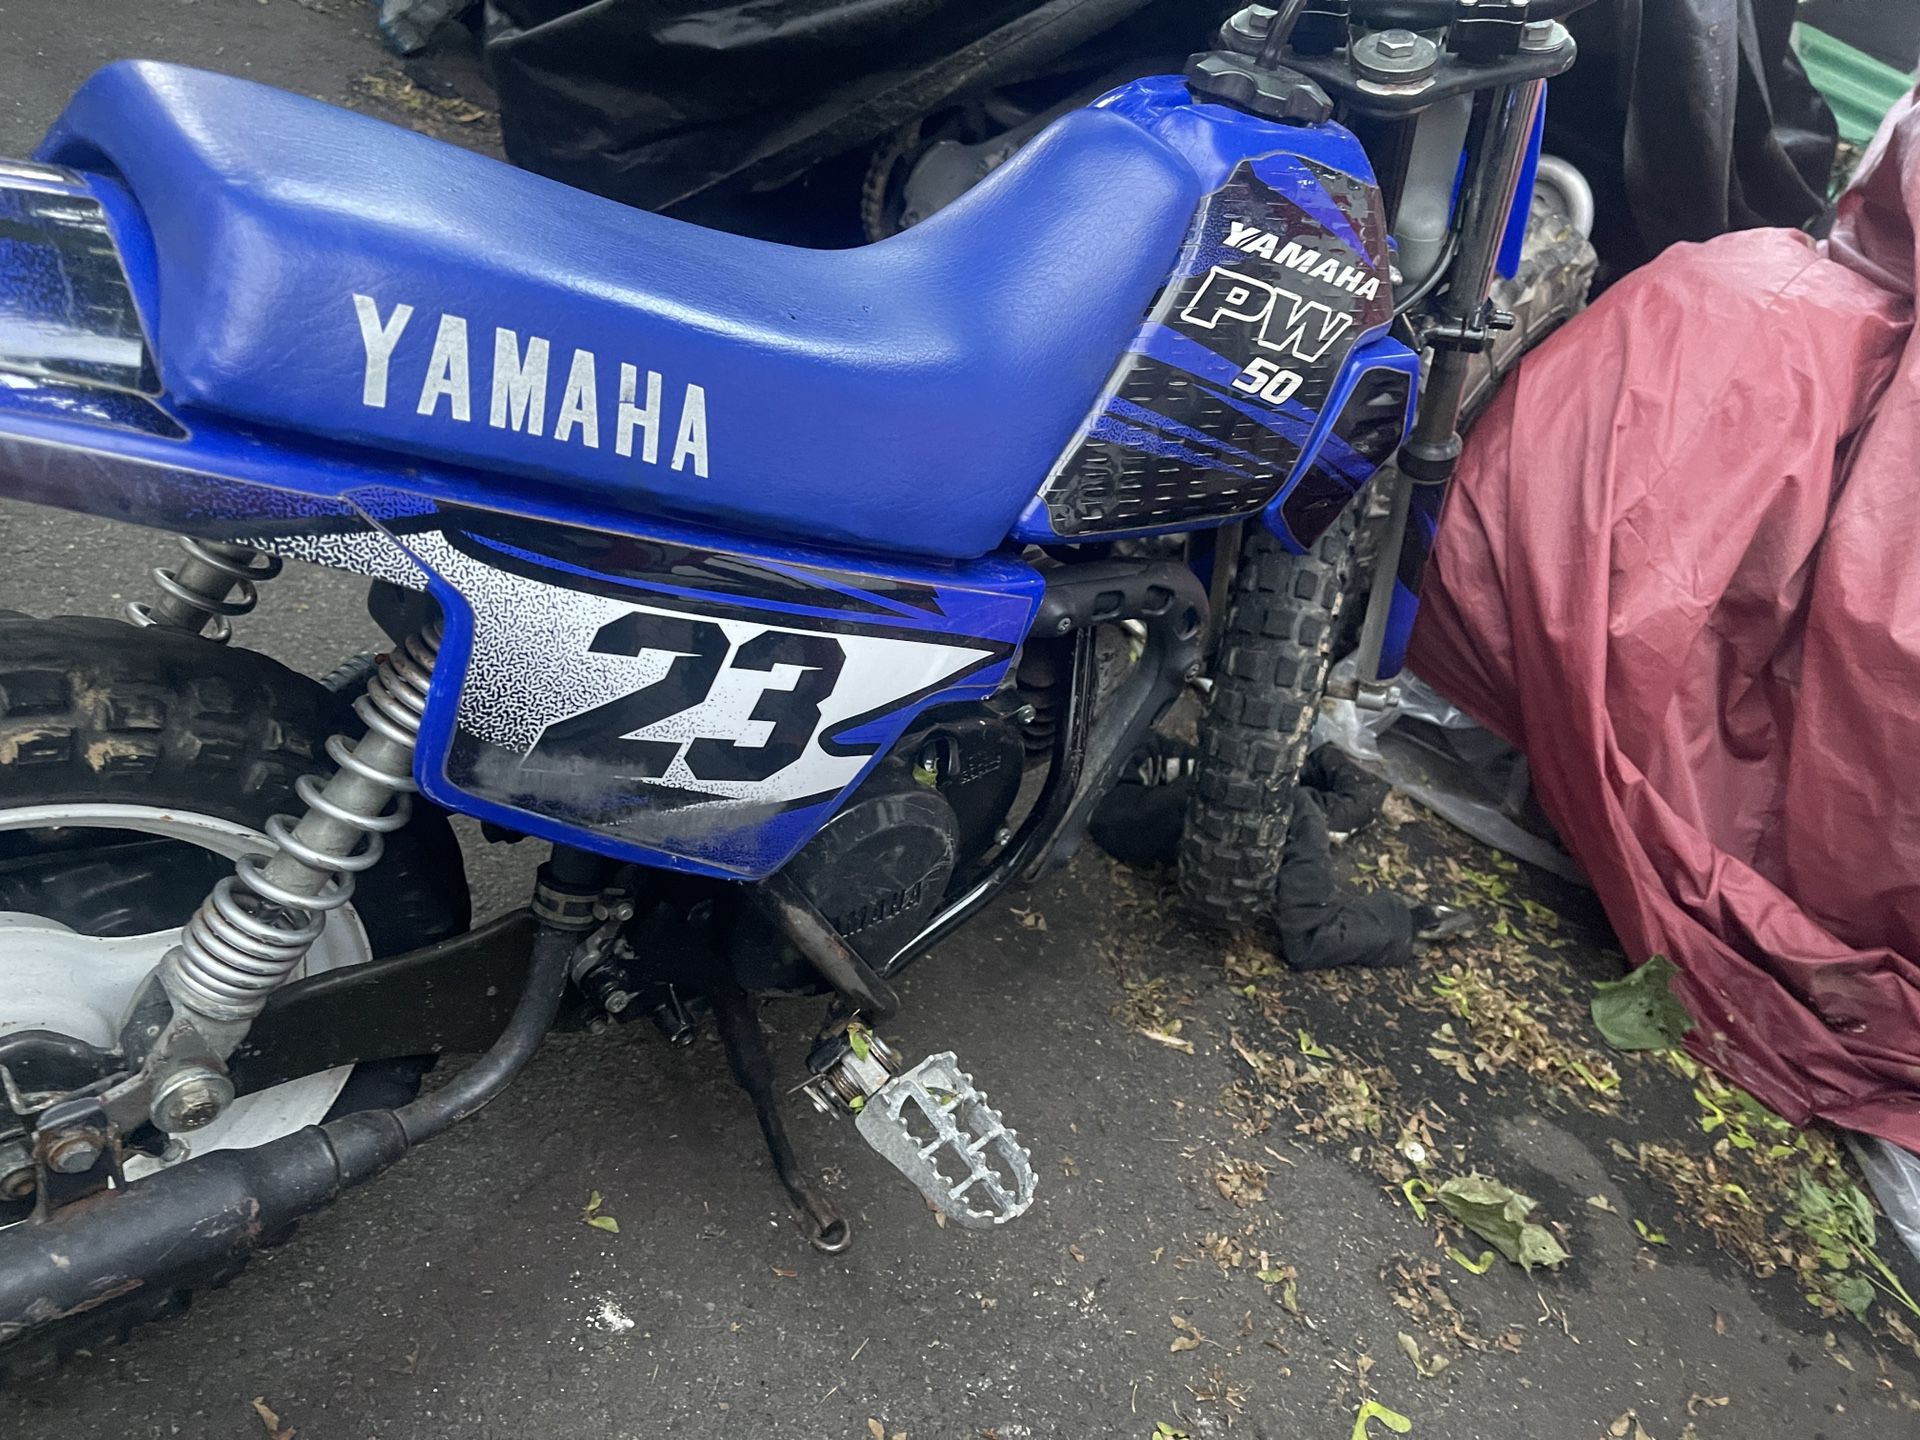 Yamaha Pw 50